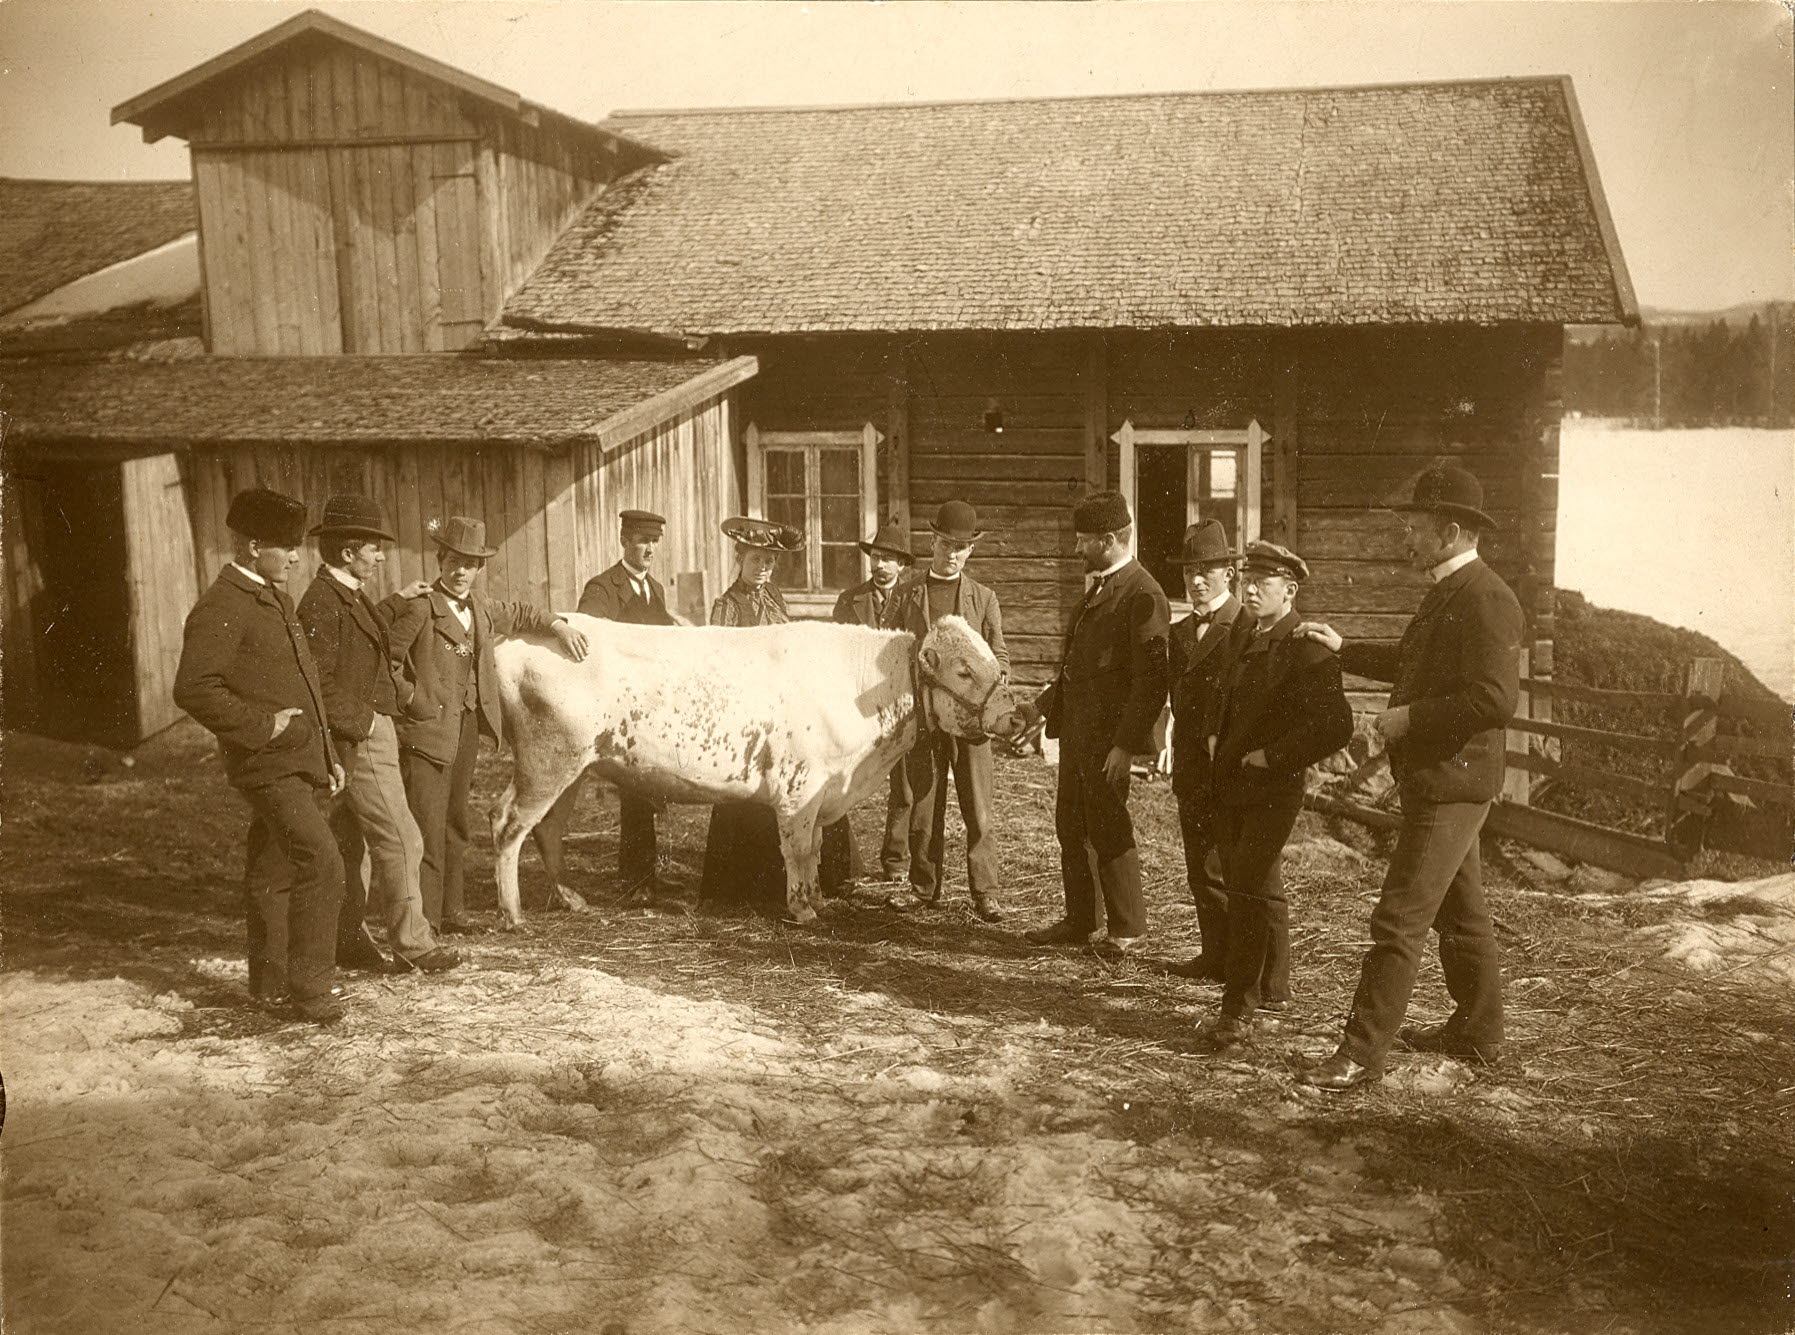 Personer i gammeldags kläder och en vit ko framför en lagård.